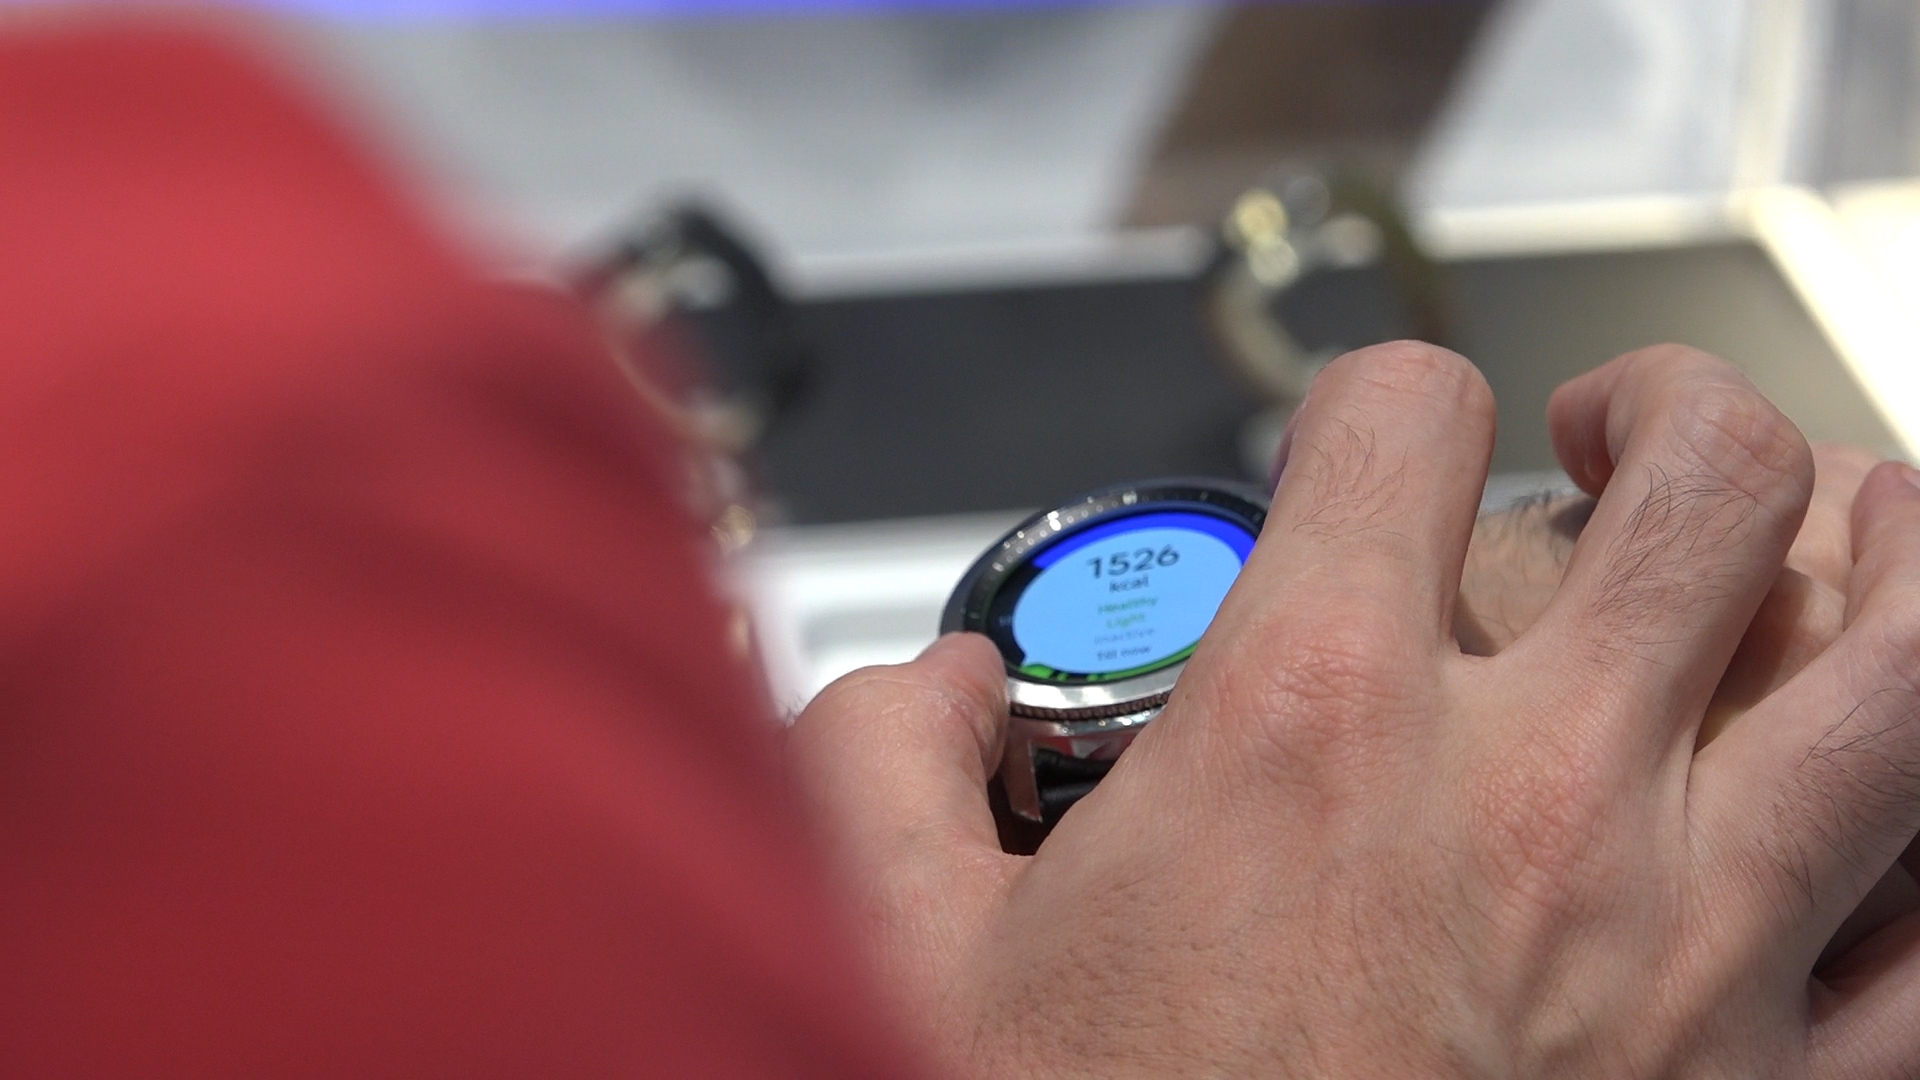 Özlemini çektiğimiz akıllı saat: Samsung Gear S3'ü kullandık 'Güzel ve işlevsel'